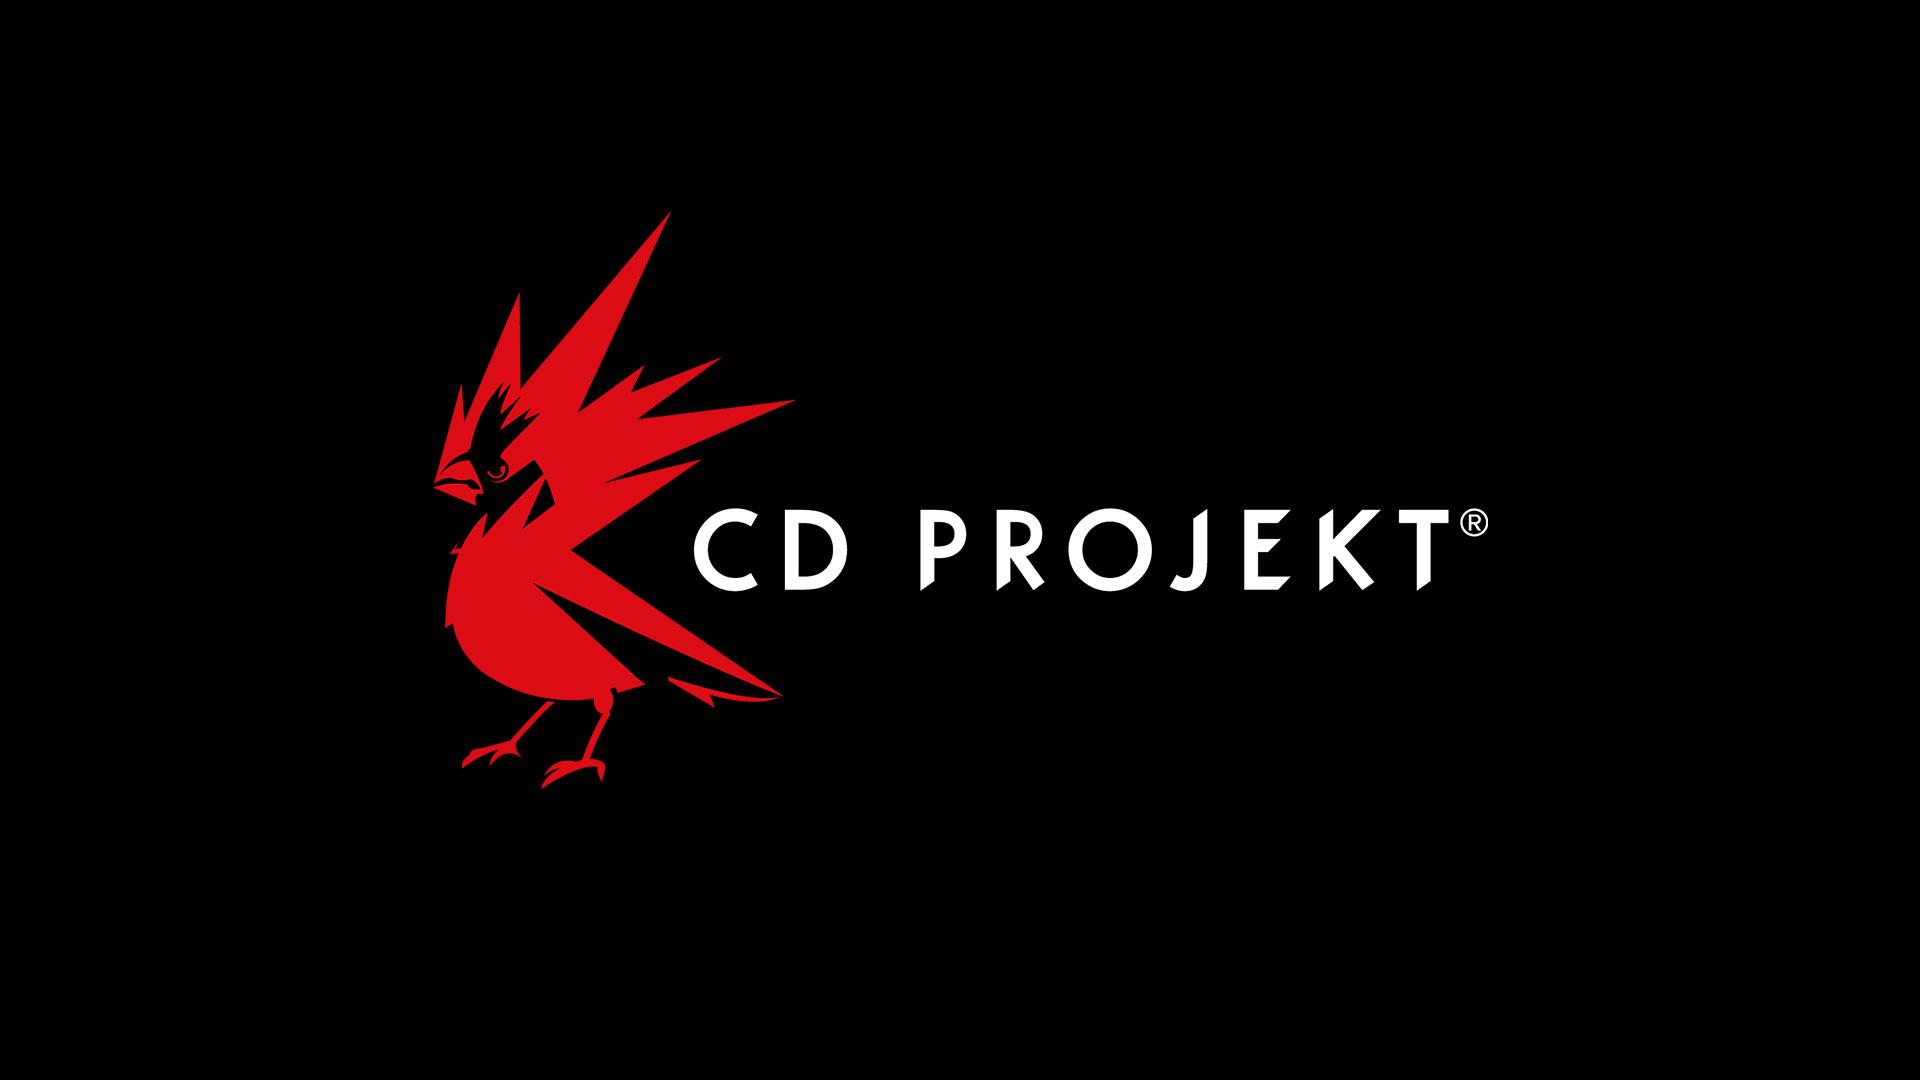 CD Projekt می خواهد بازی های بزرگ بیشتری منتشر کند